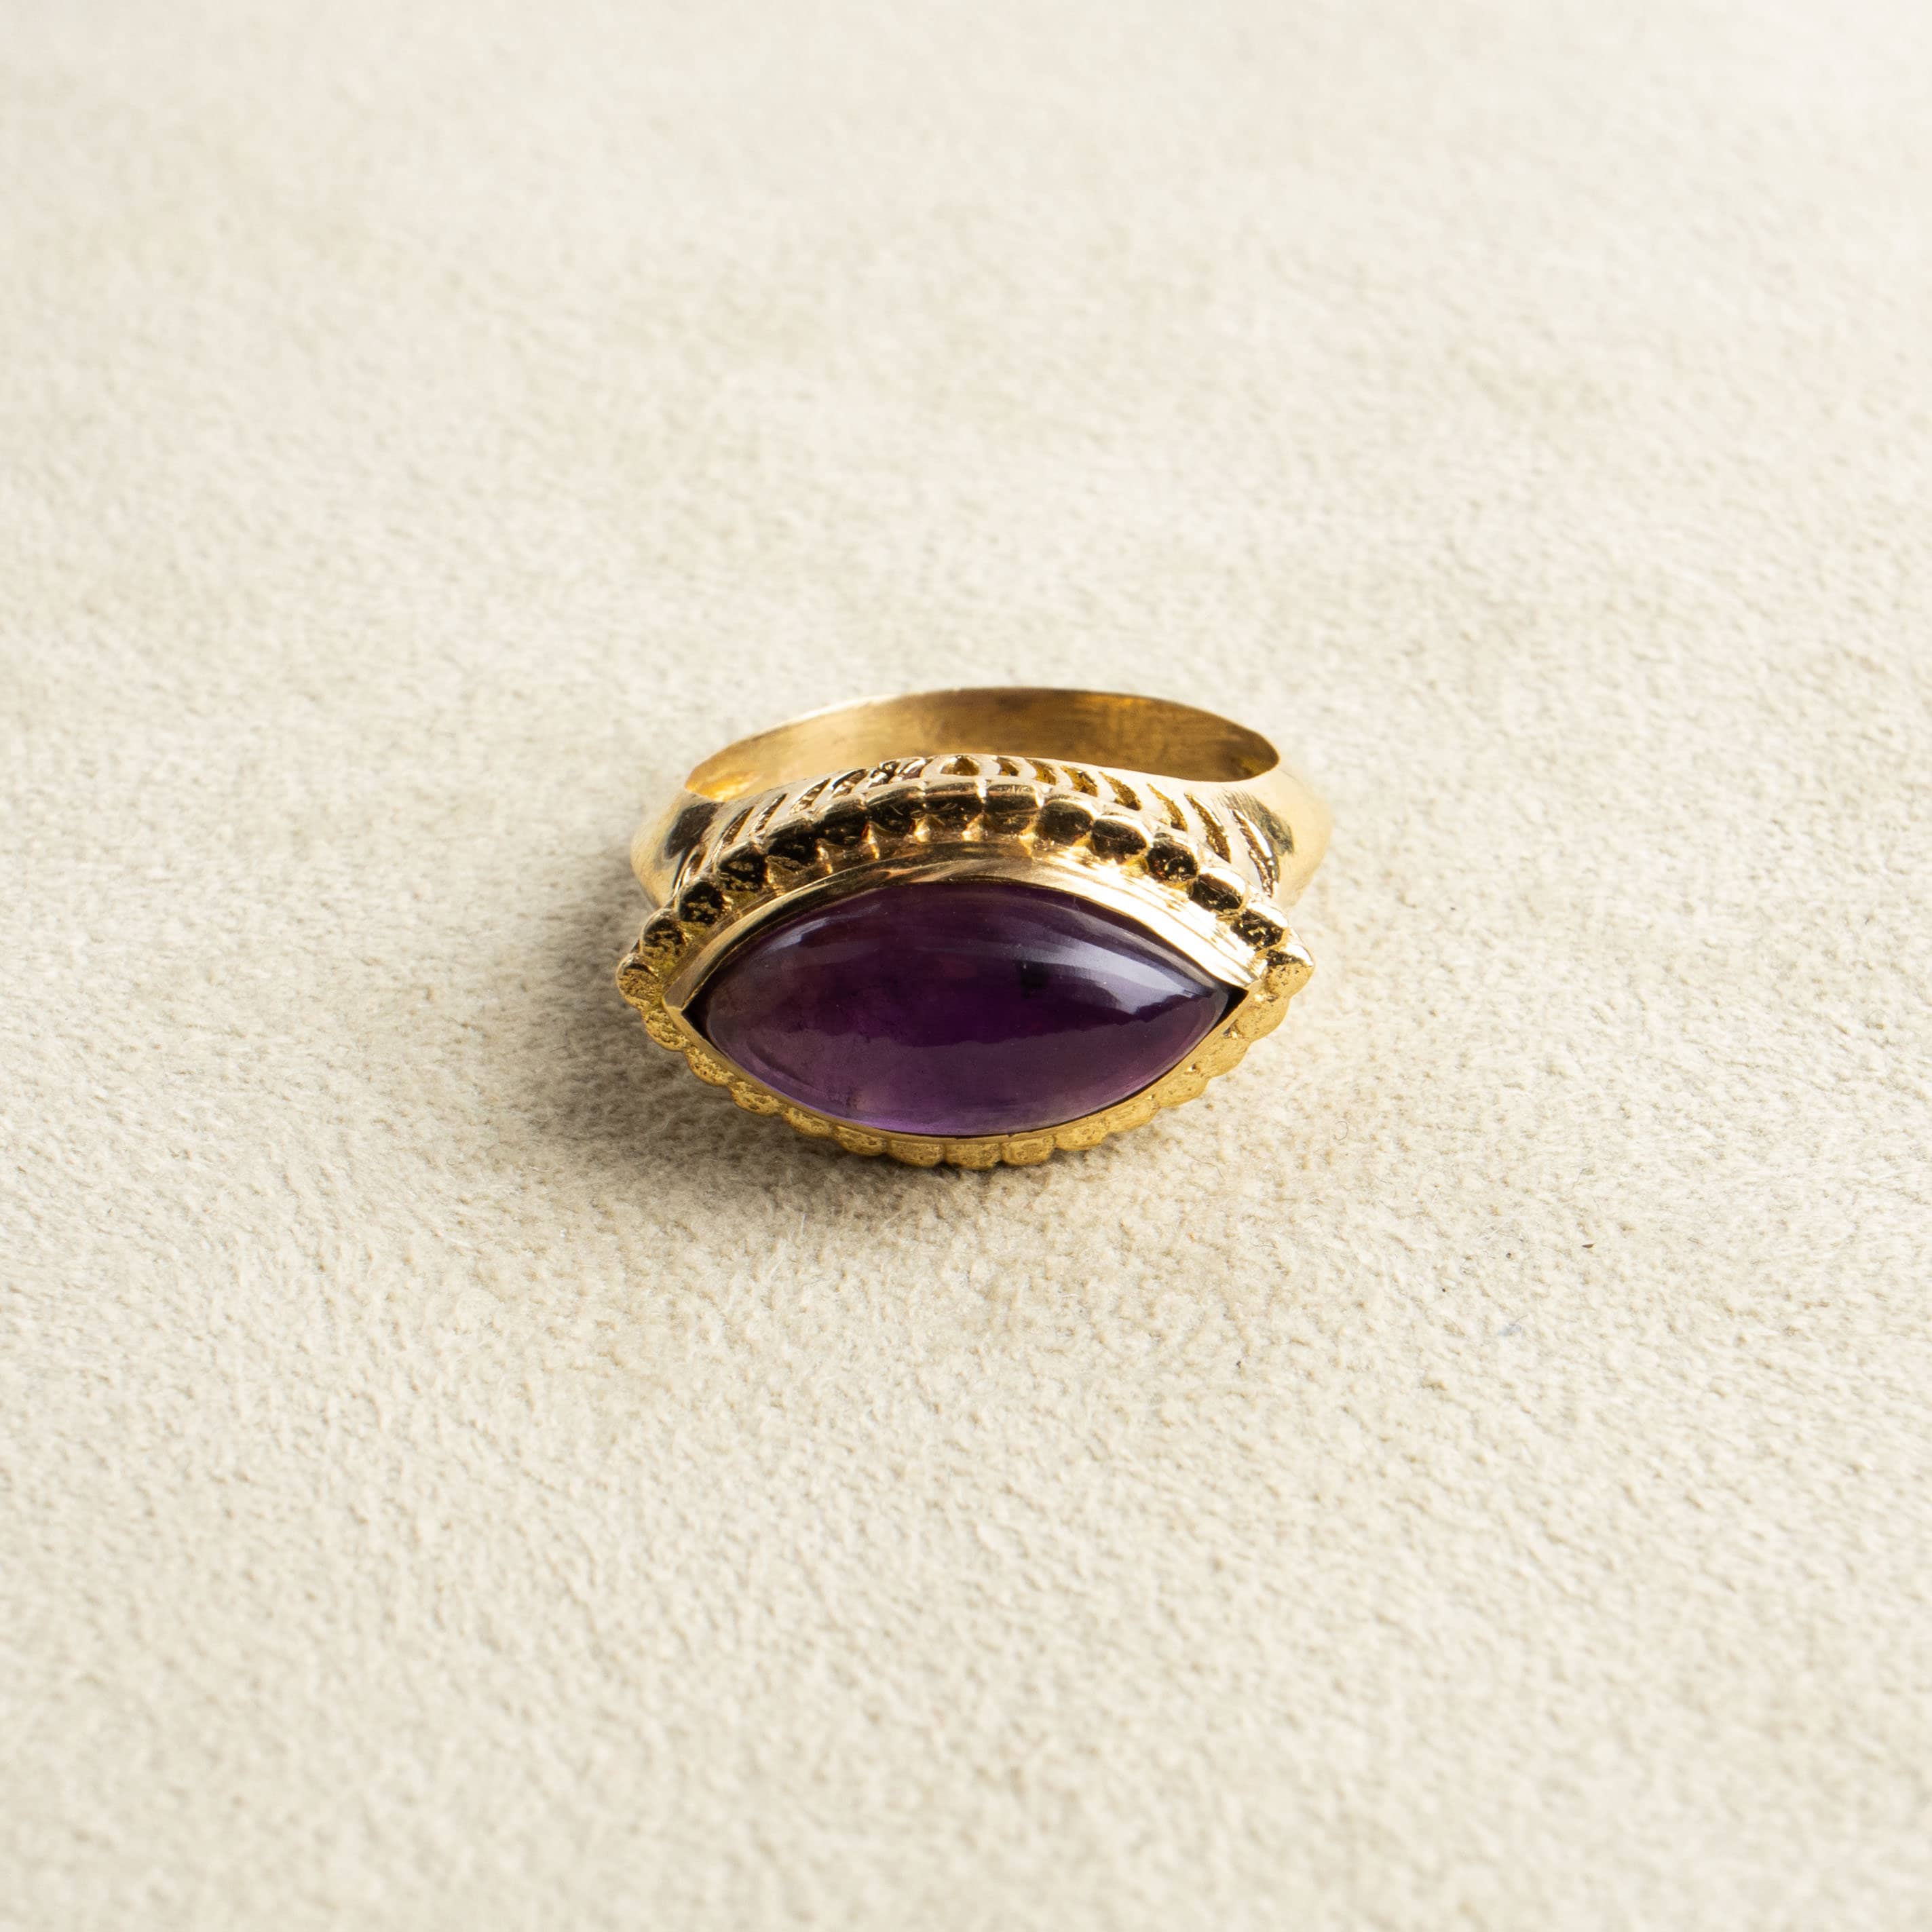 Augenförmiger Amethyst Ring groß gold handgemacht - NooeBerlin